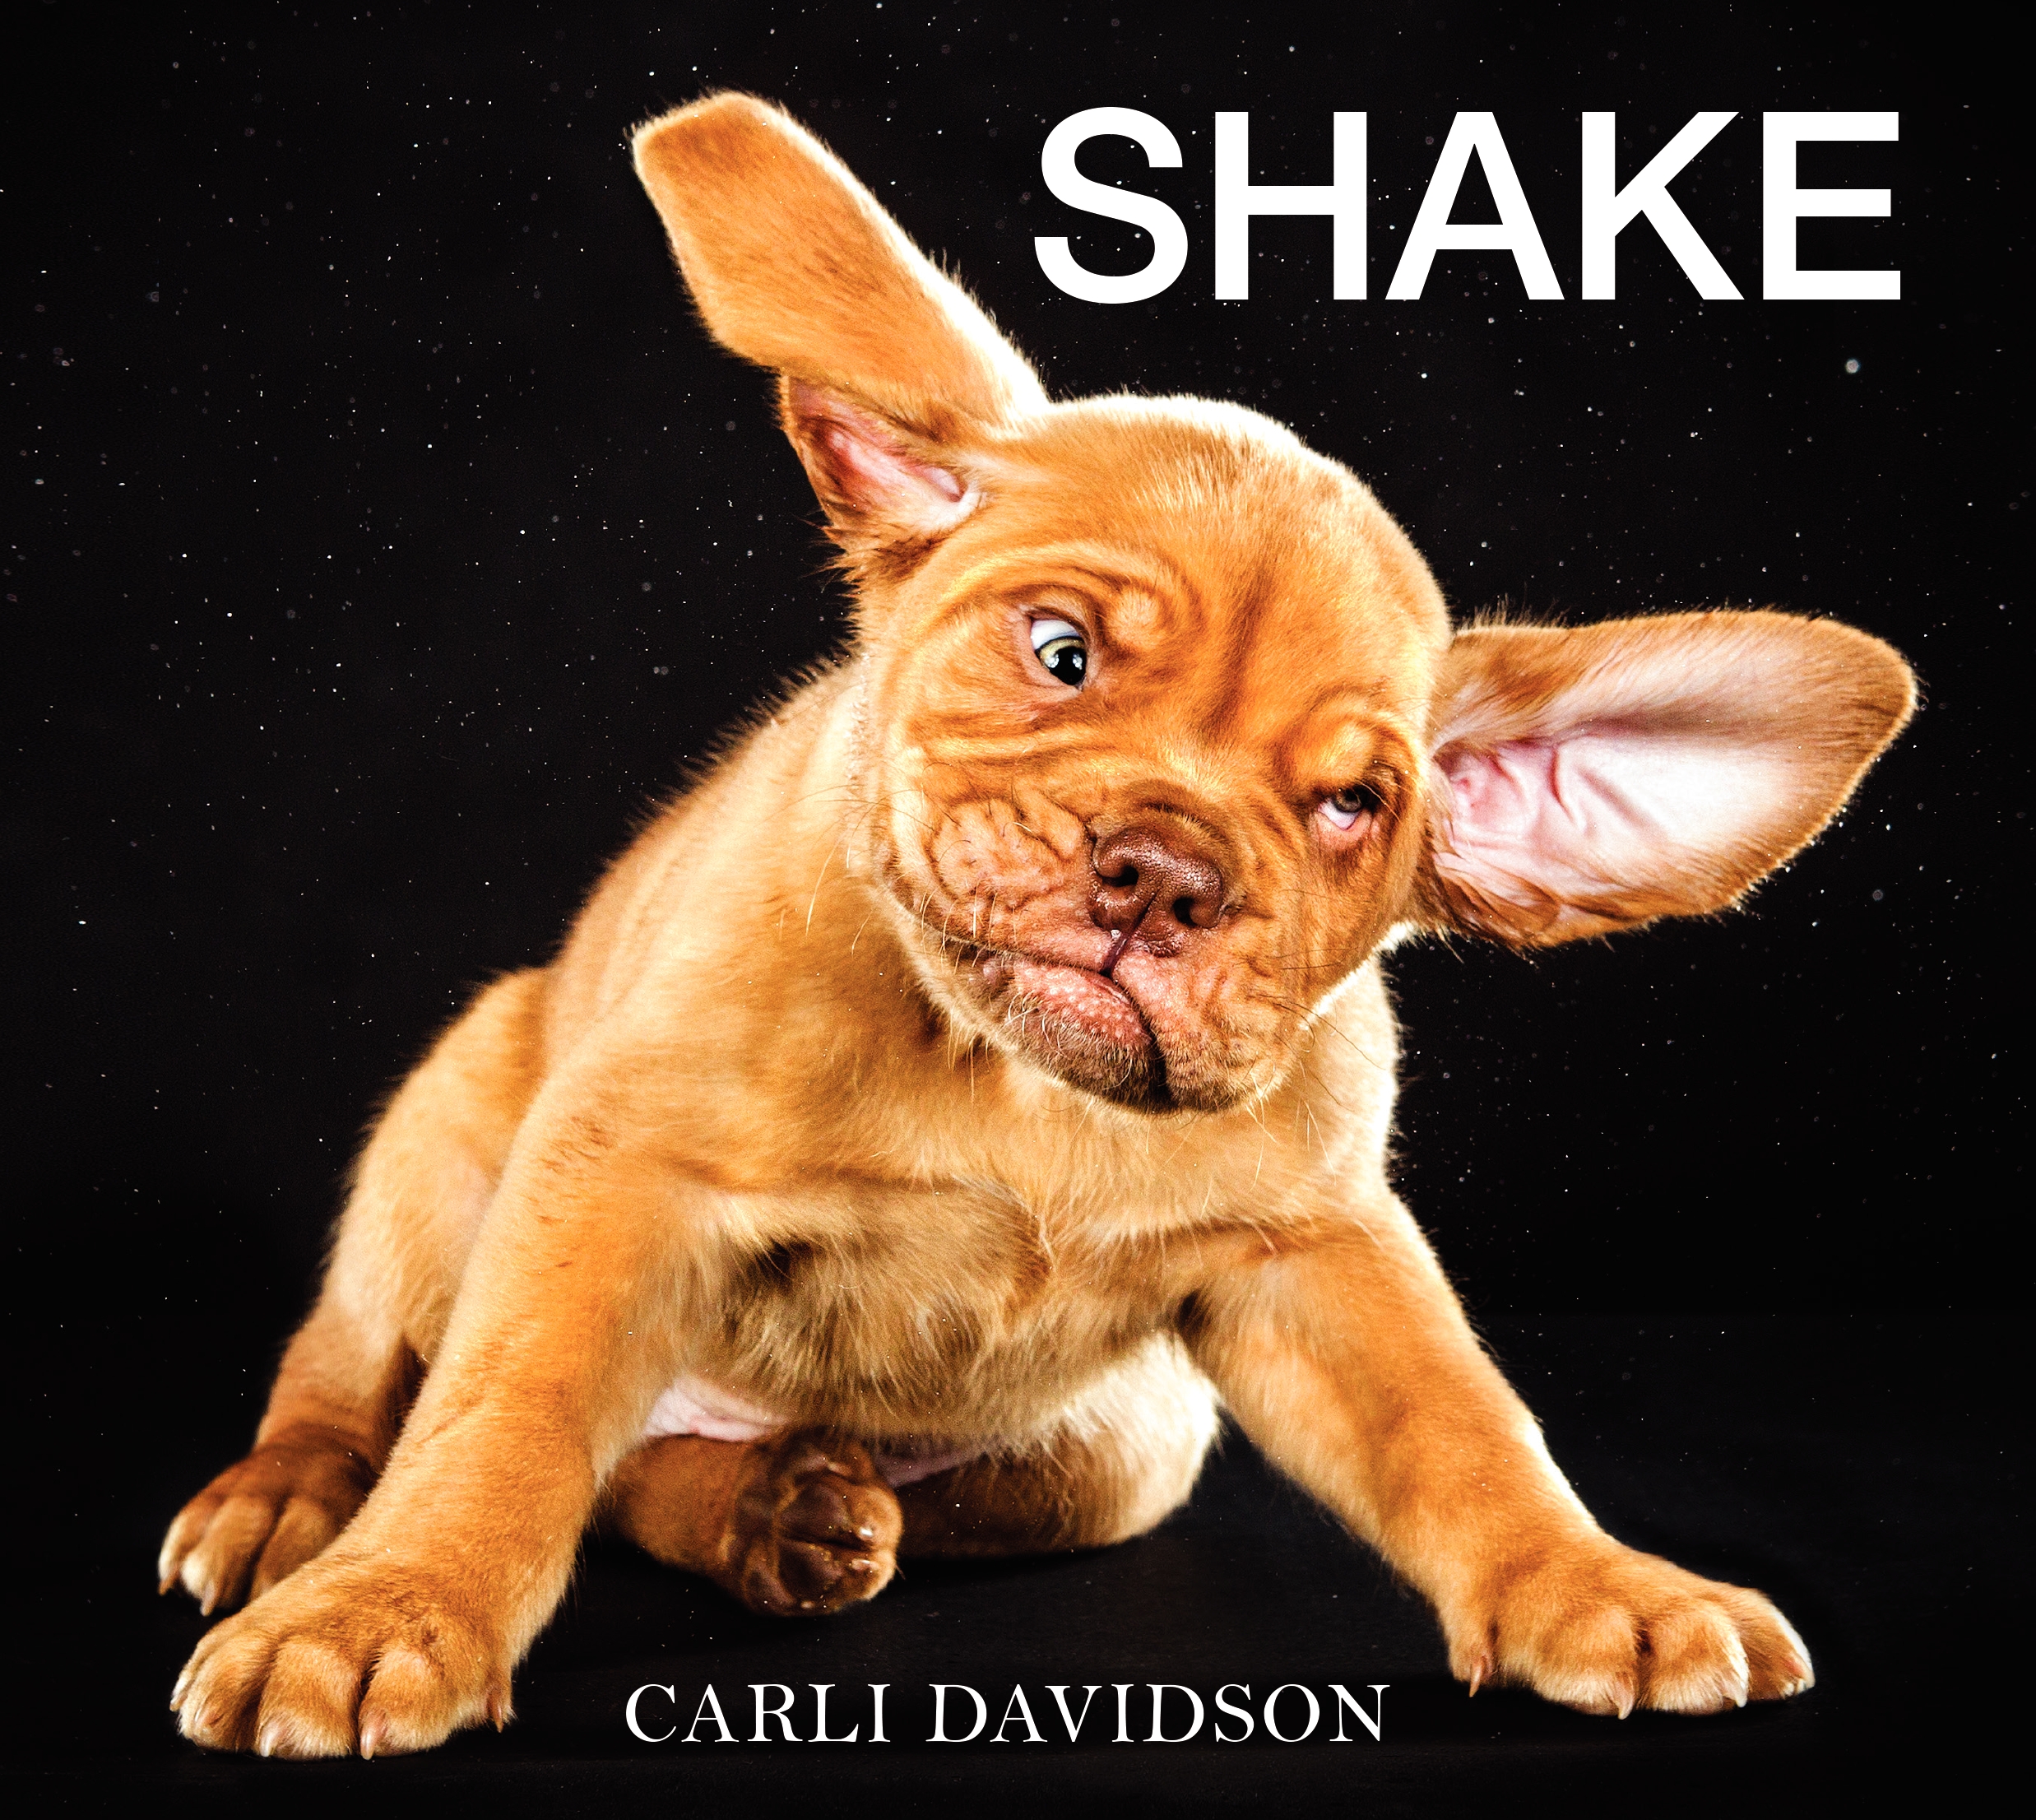 Book Launch: Shake by Carli Davidson